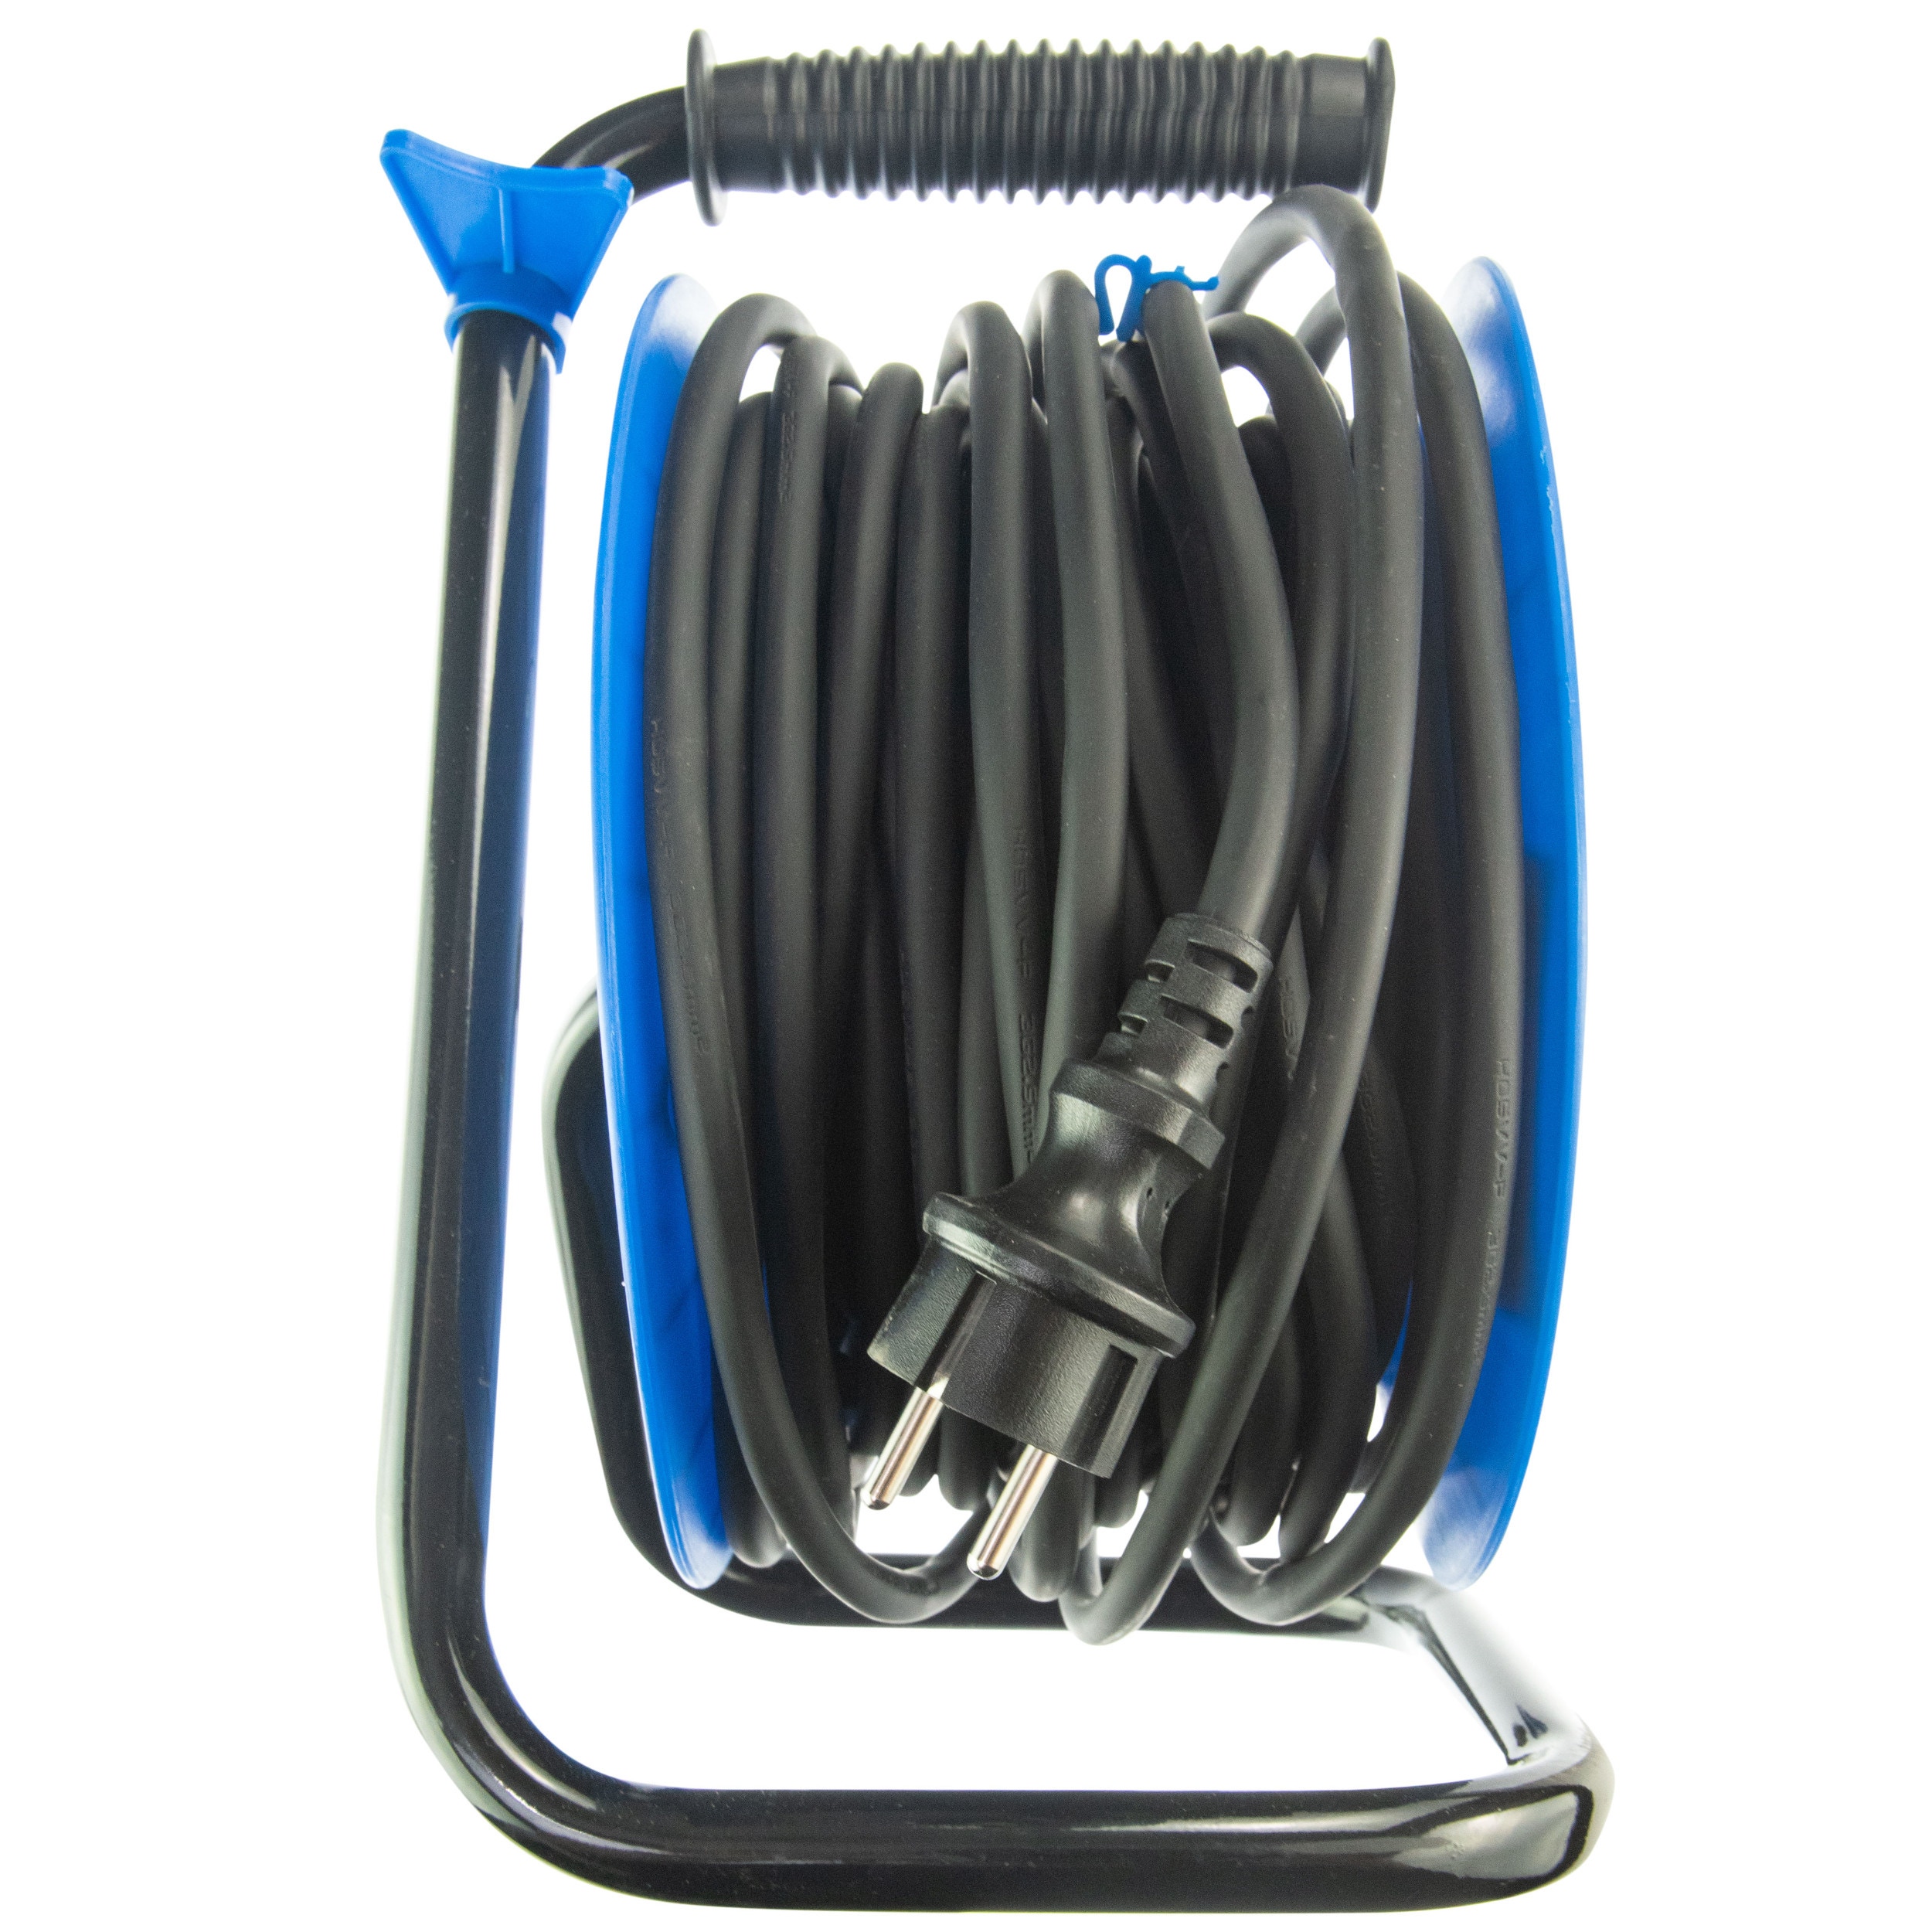 Derulator cablu electric Hepol, 4 prize, 25 m, 3 x 2.5 mmp, contact de protectie